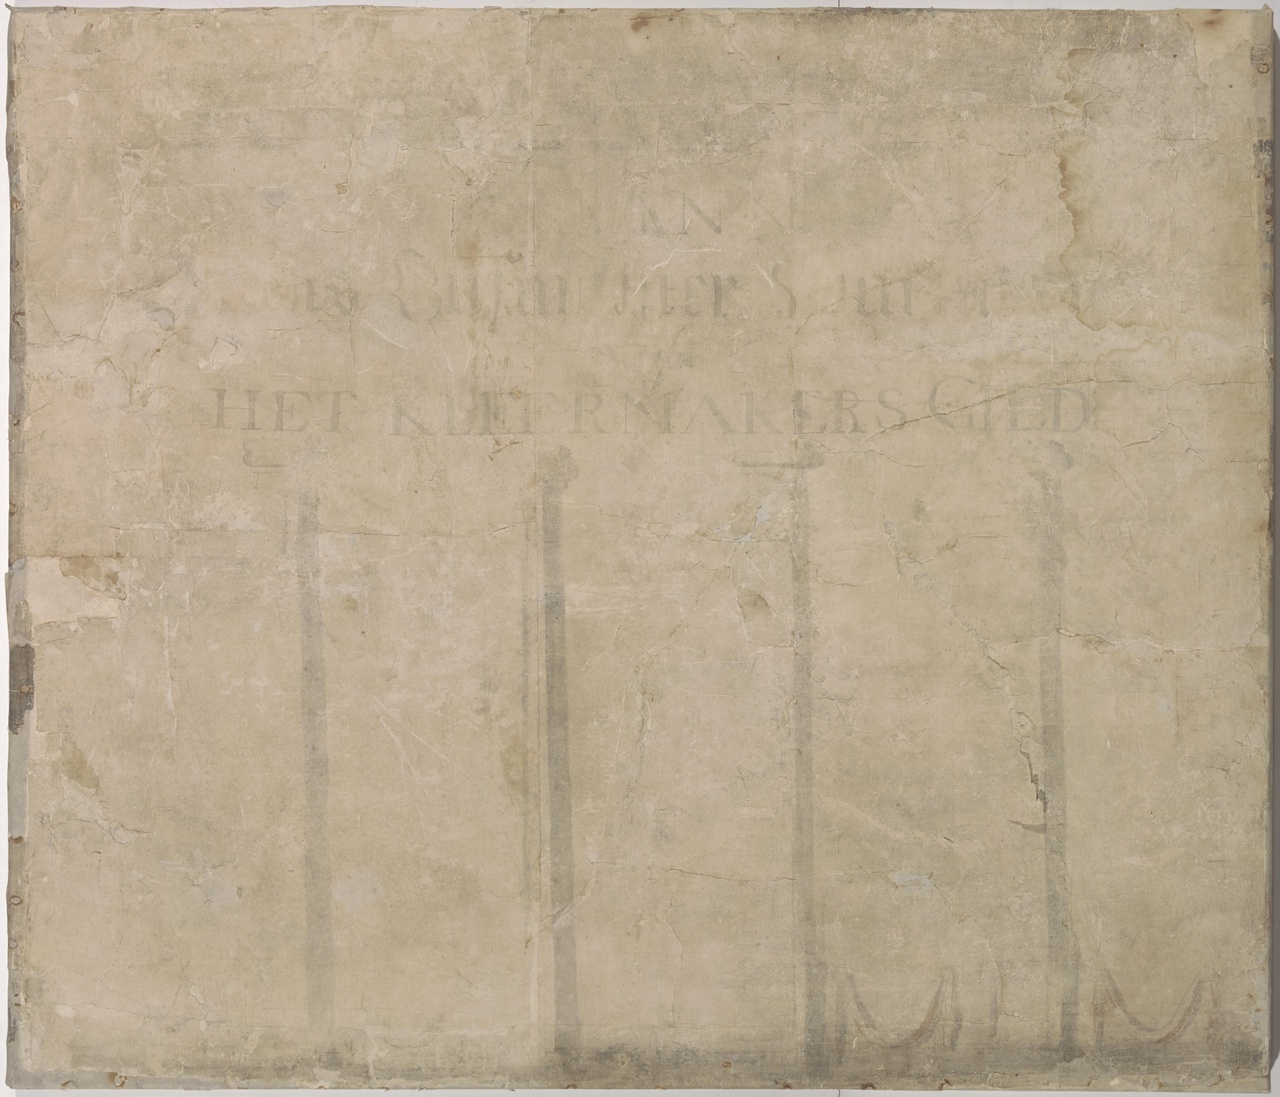 Naambord van de dekens en busmeesters van het Kleermakersgilde over 1795-1798